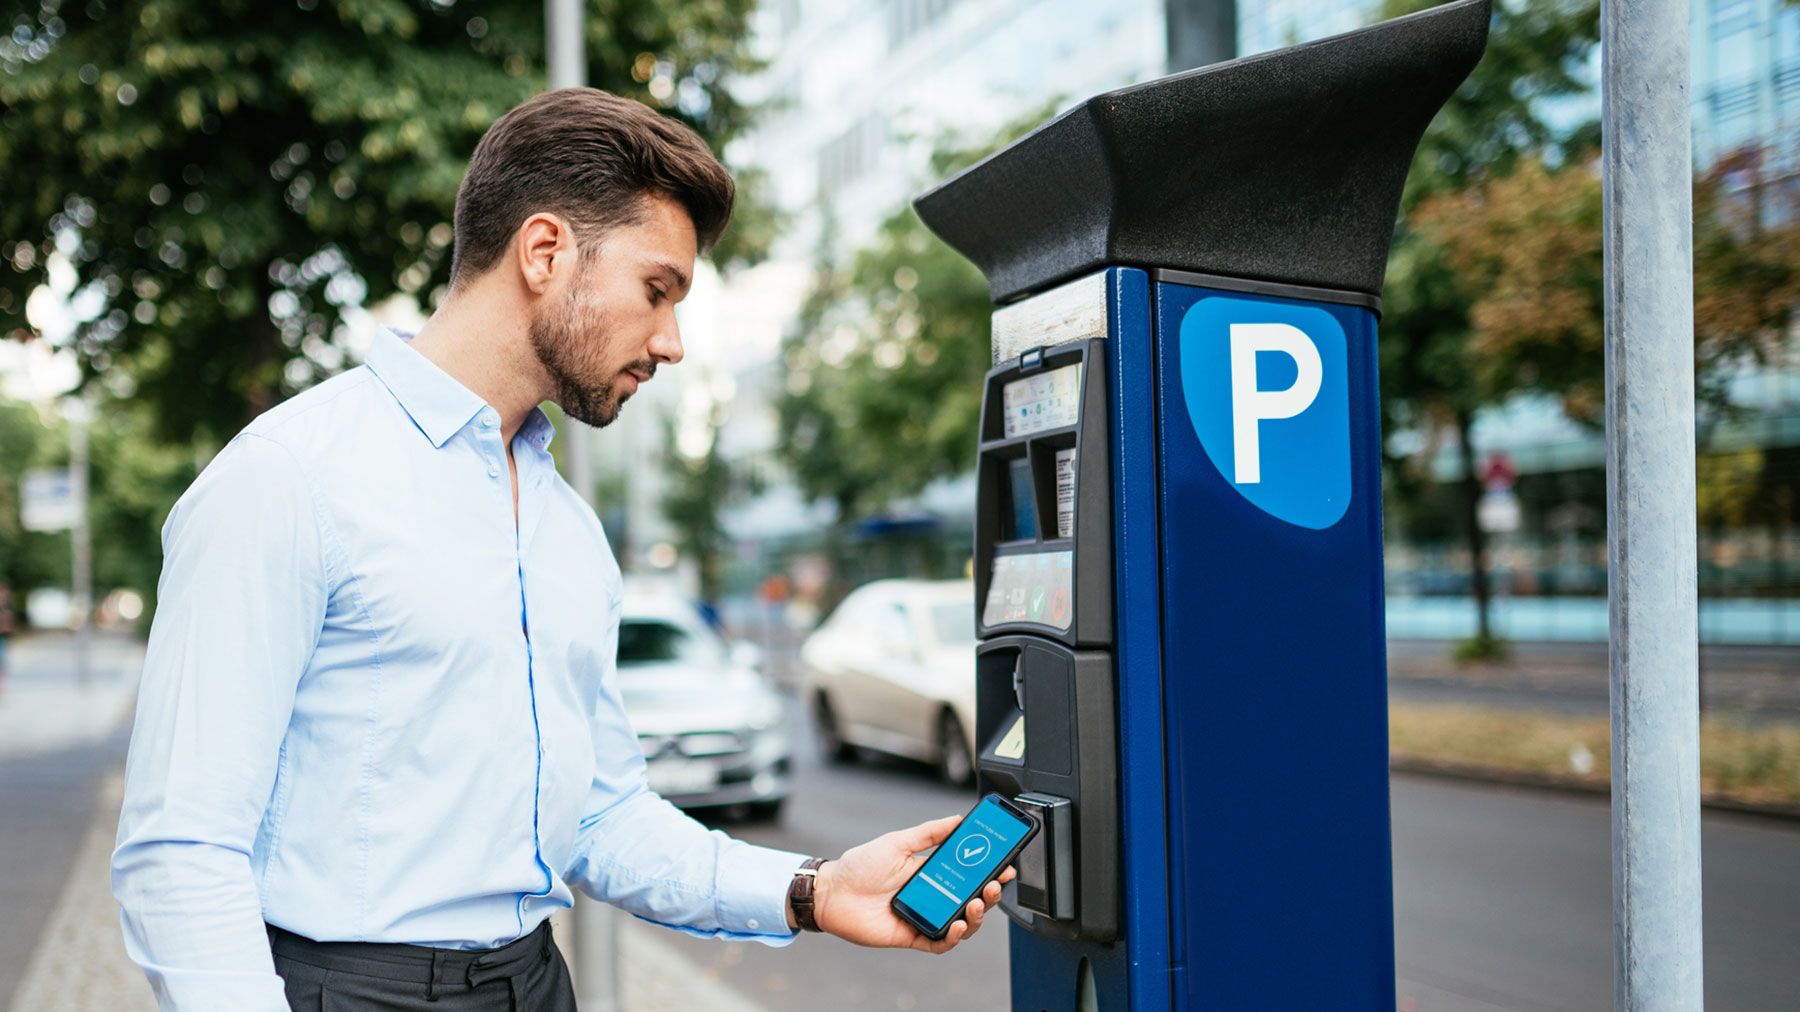 Man using smart parking meter